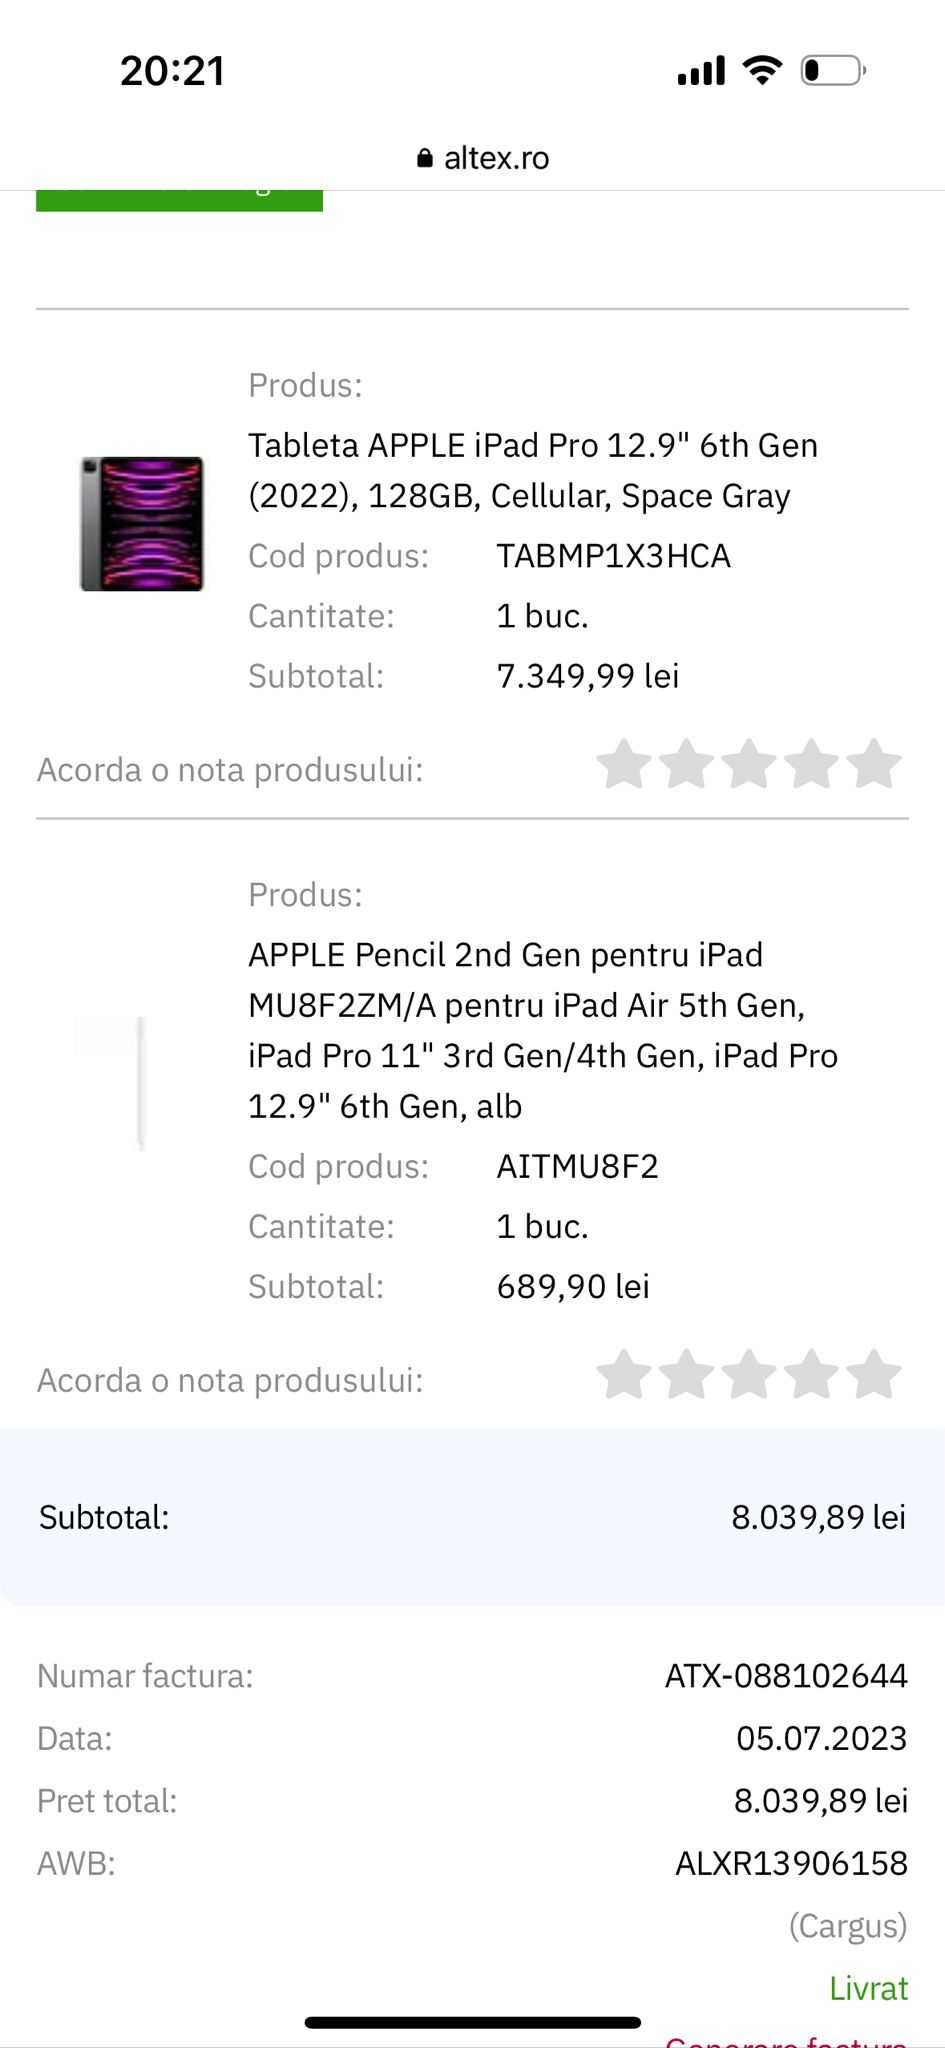 Tableta APPLE iPad Pro 12.9" 6th G, CELULLAR stilou si husa cu factura